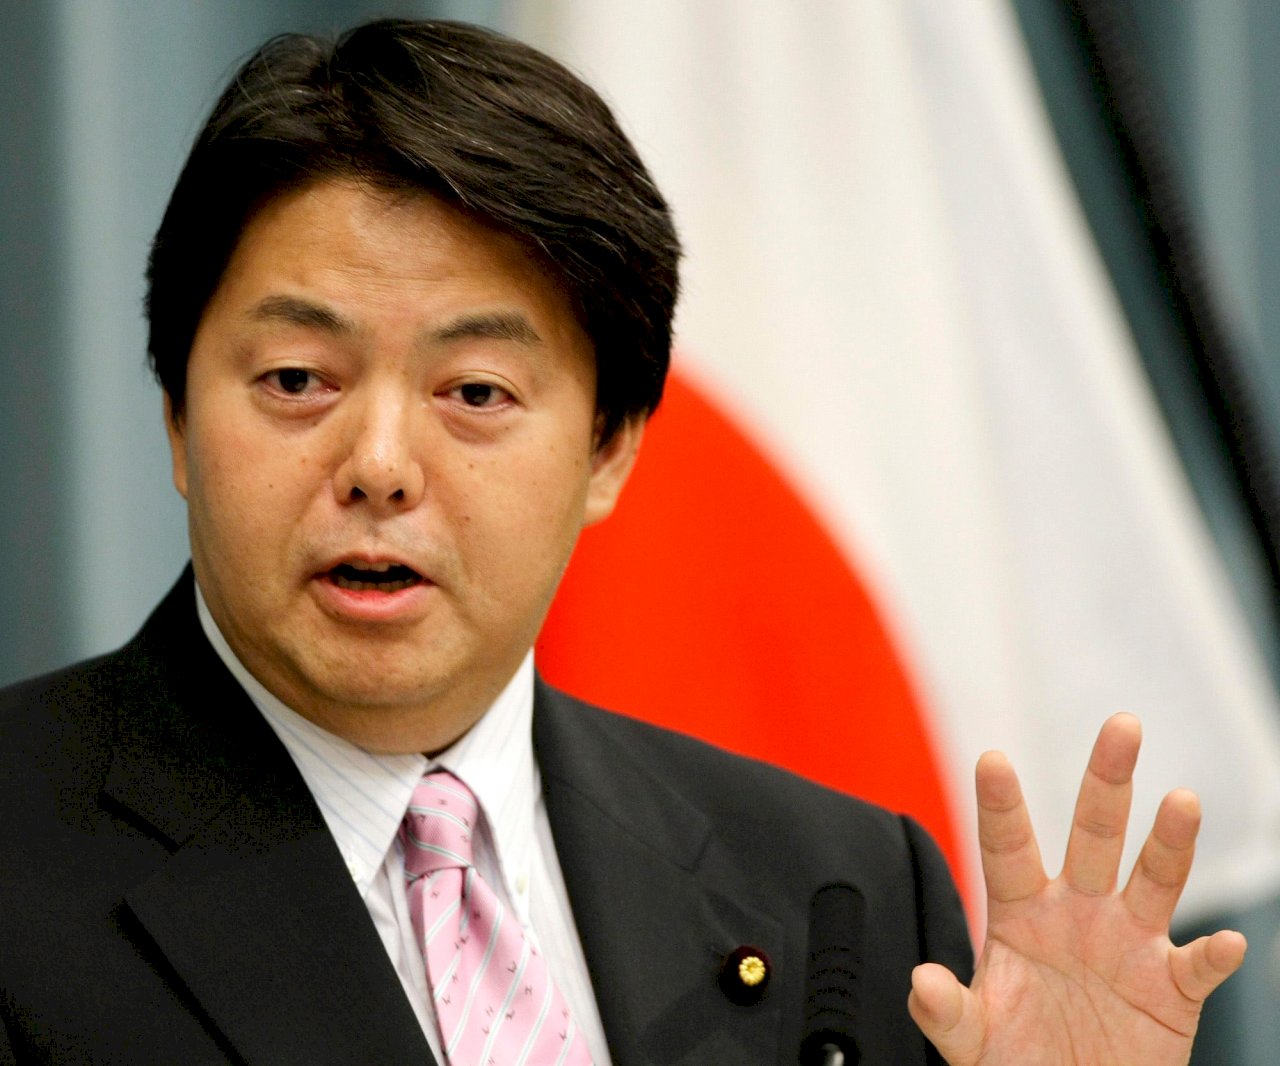 擺脫親中形象  日本新外務大臣辭去日中友好議員聯盟會長